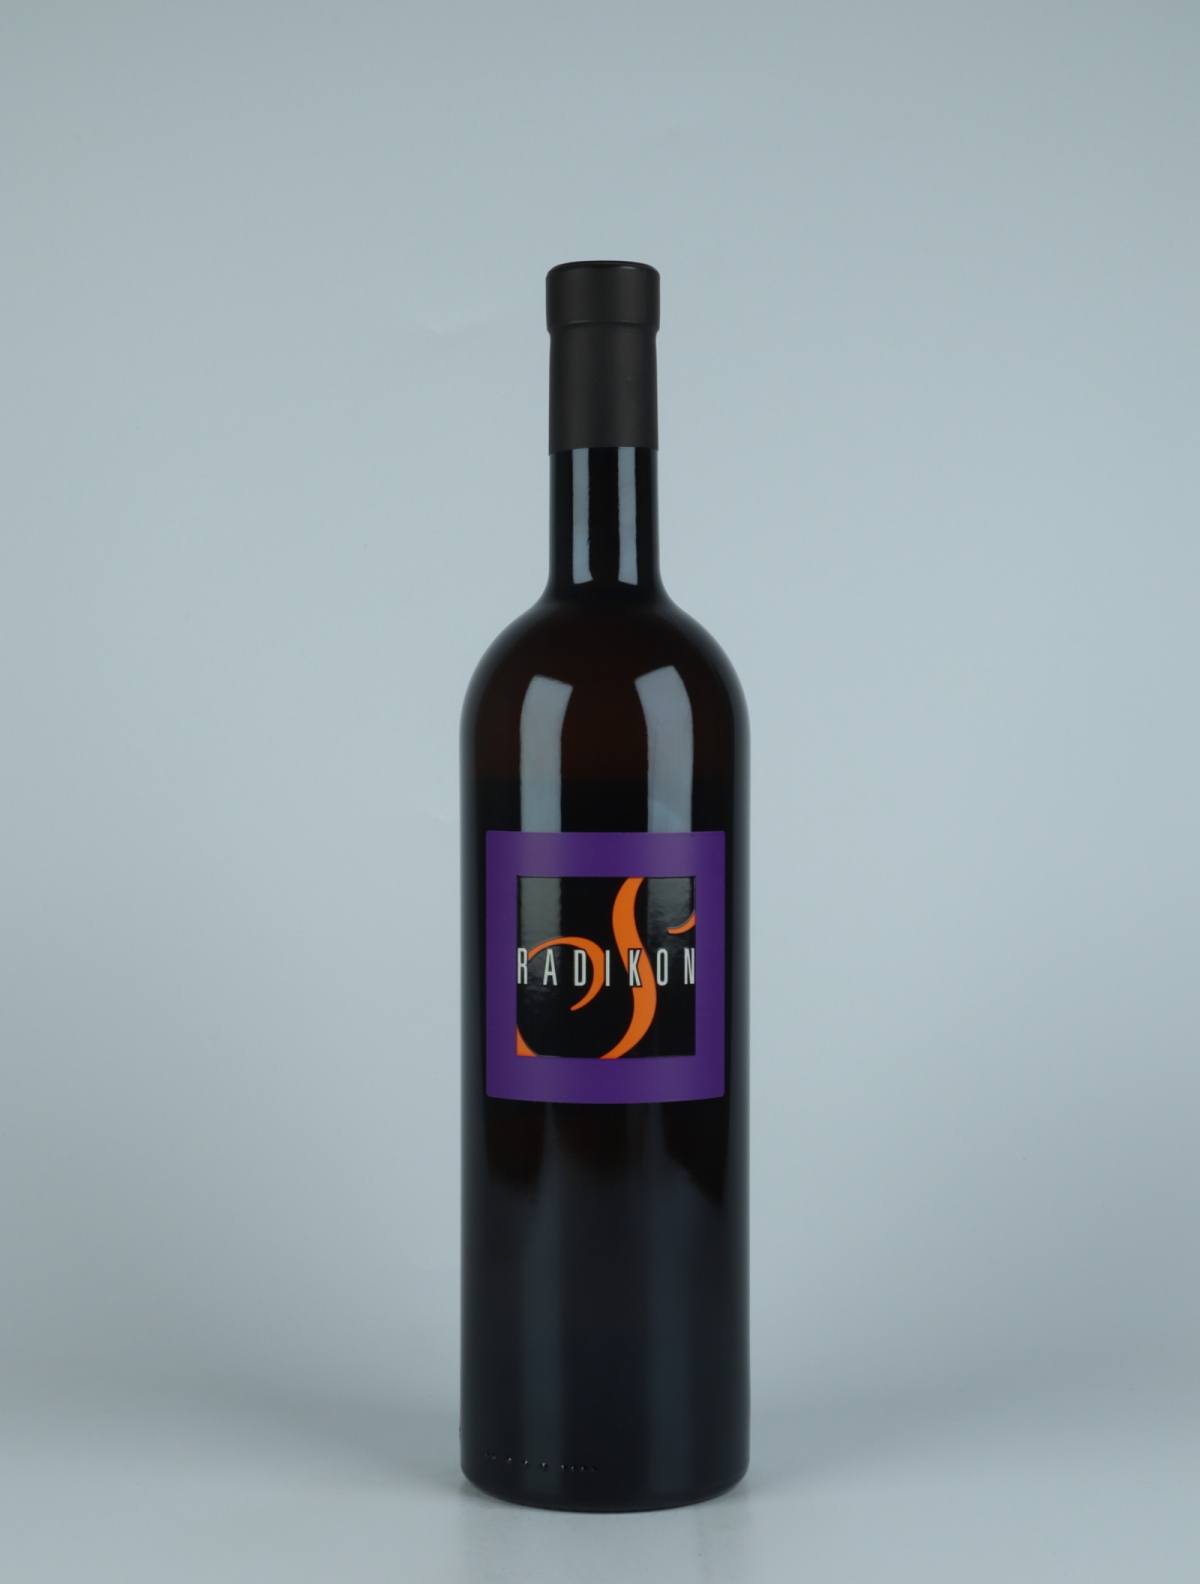 A bottle 2020 Slatnik Orange wine from Radikon, Friuli in Italy